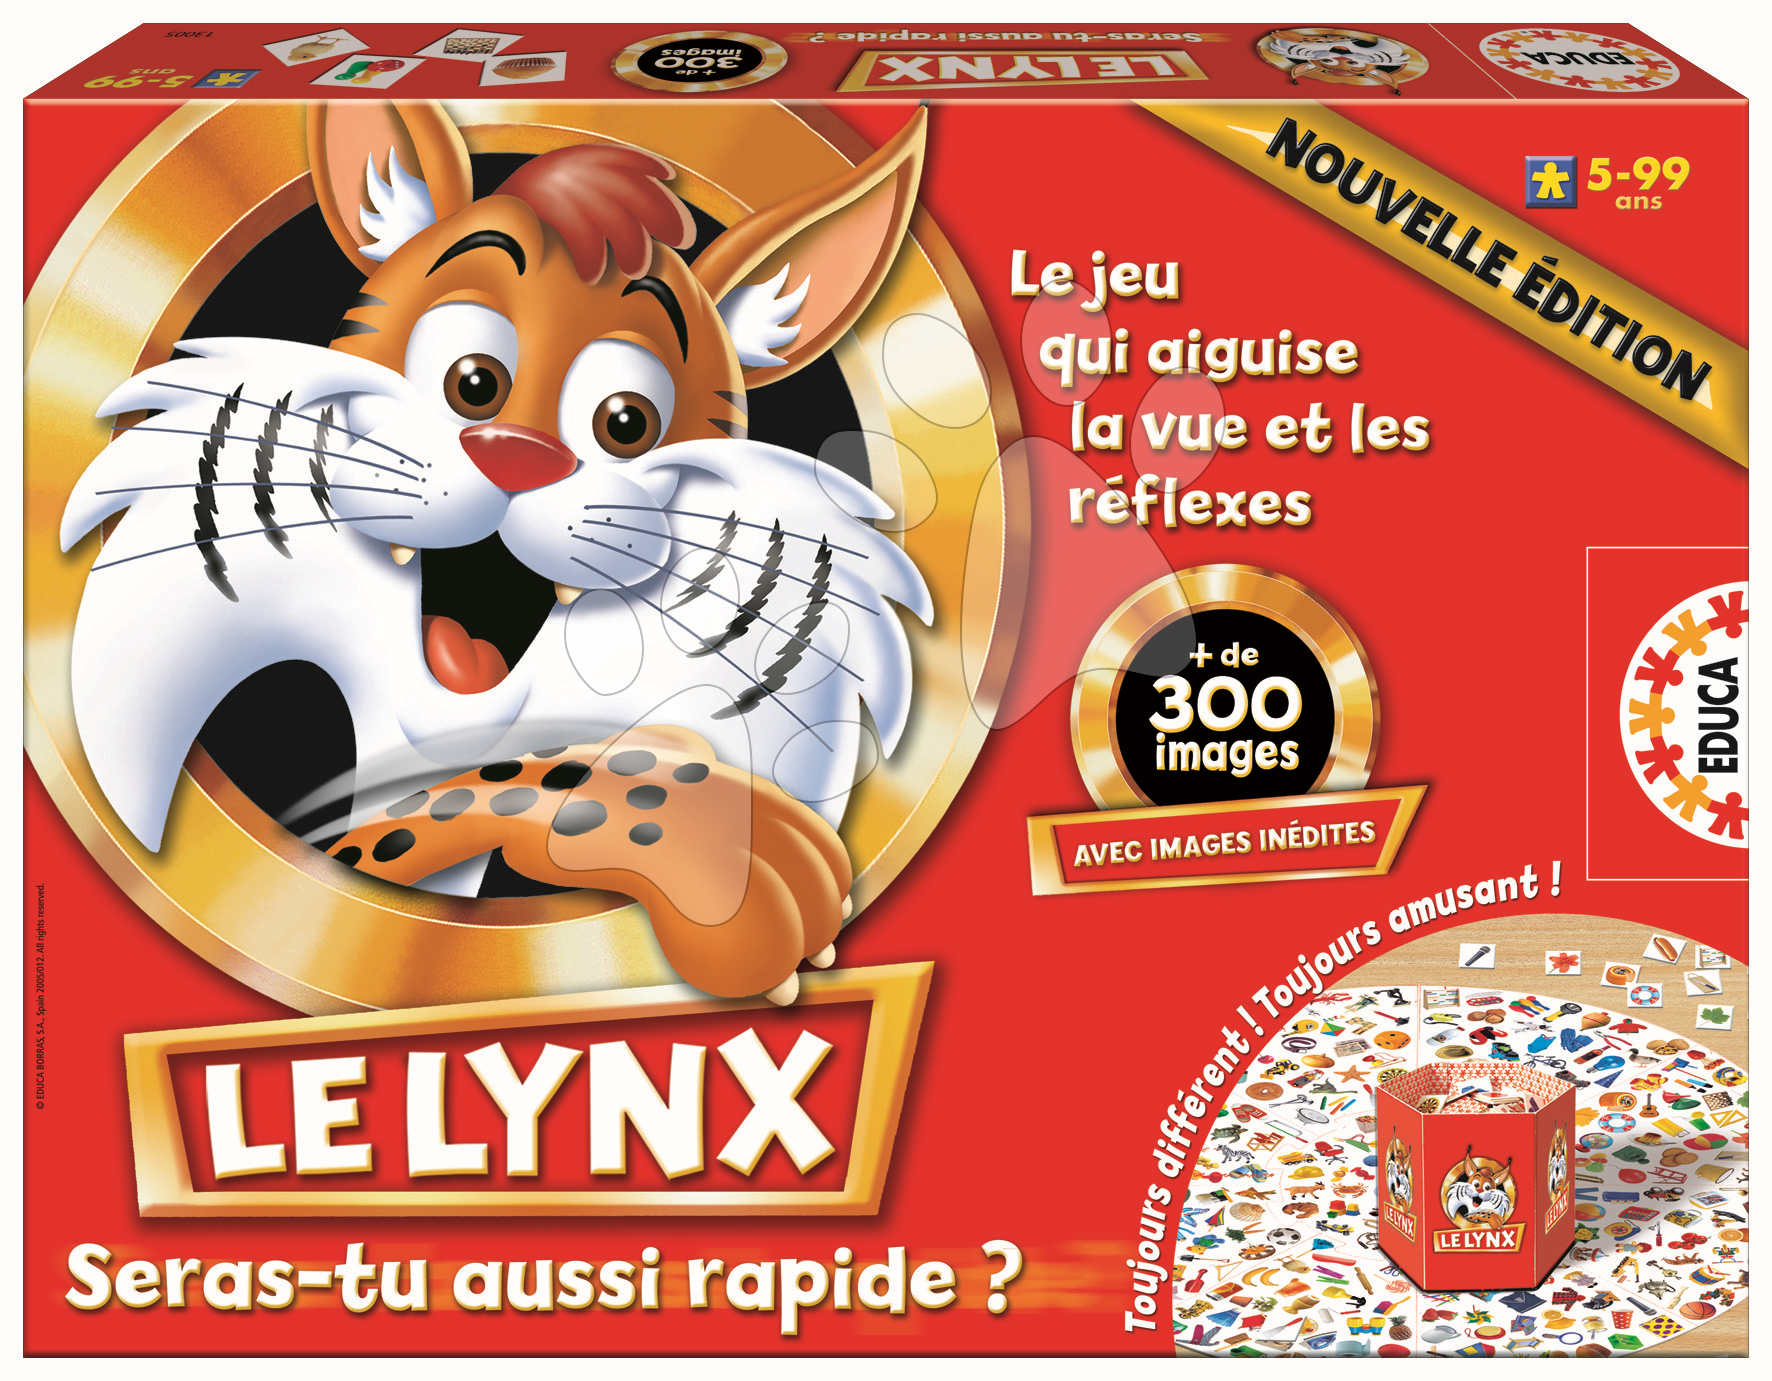 Cudzojazyčné spoločenské hry - Rodinná spoločenská hra Le Lynx Educa 300 obrázkov vo francúzštine od 5 rokov